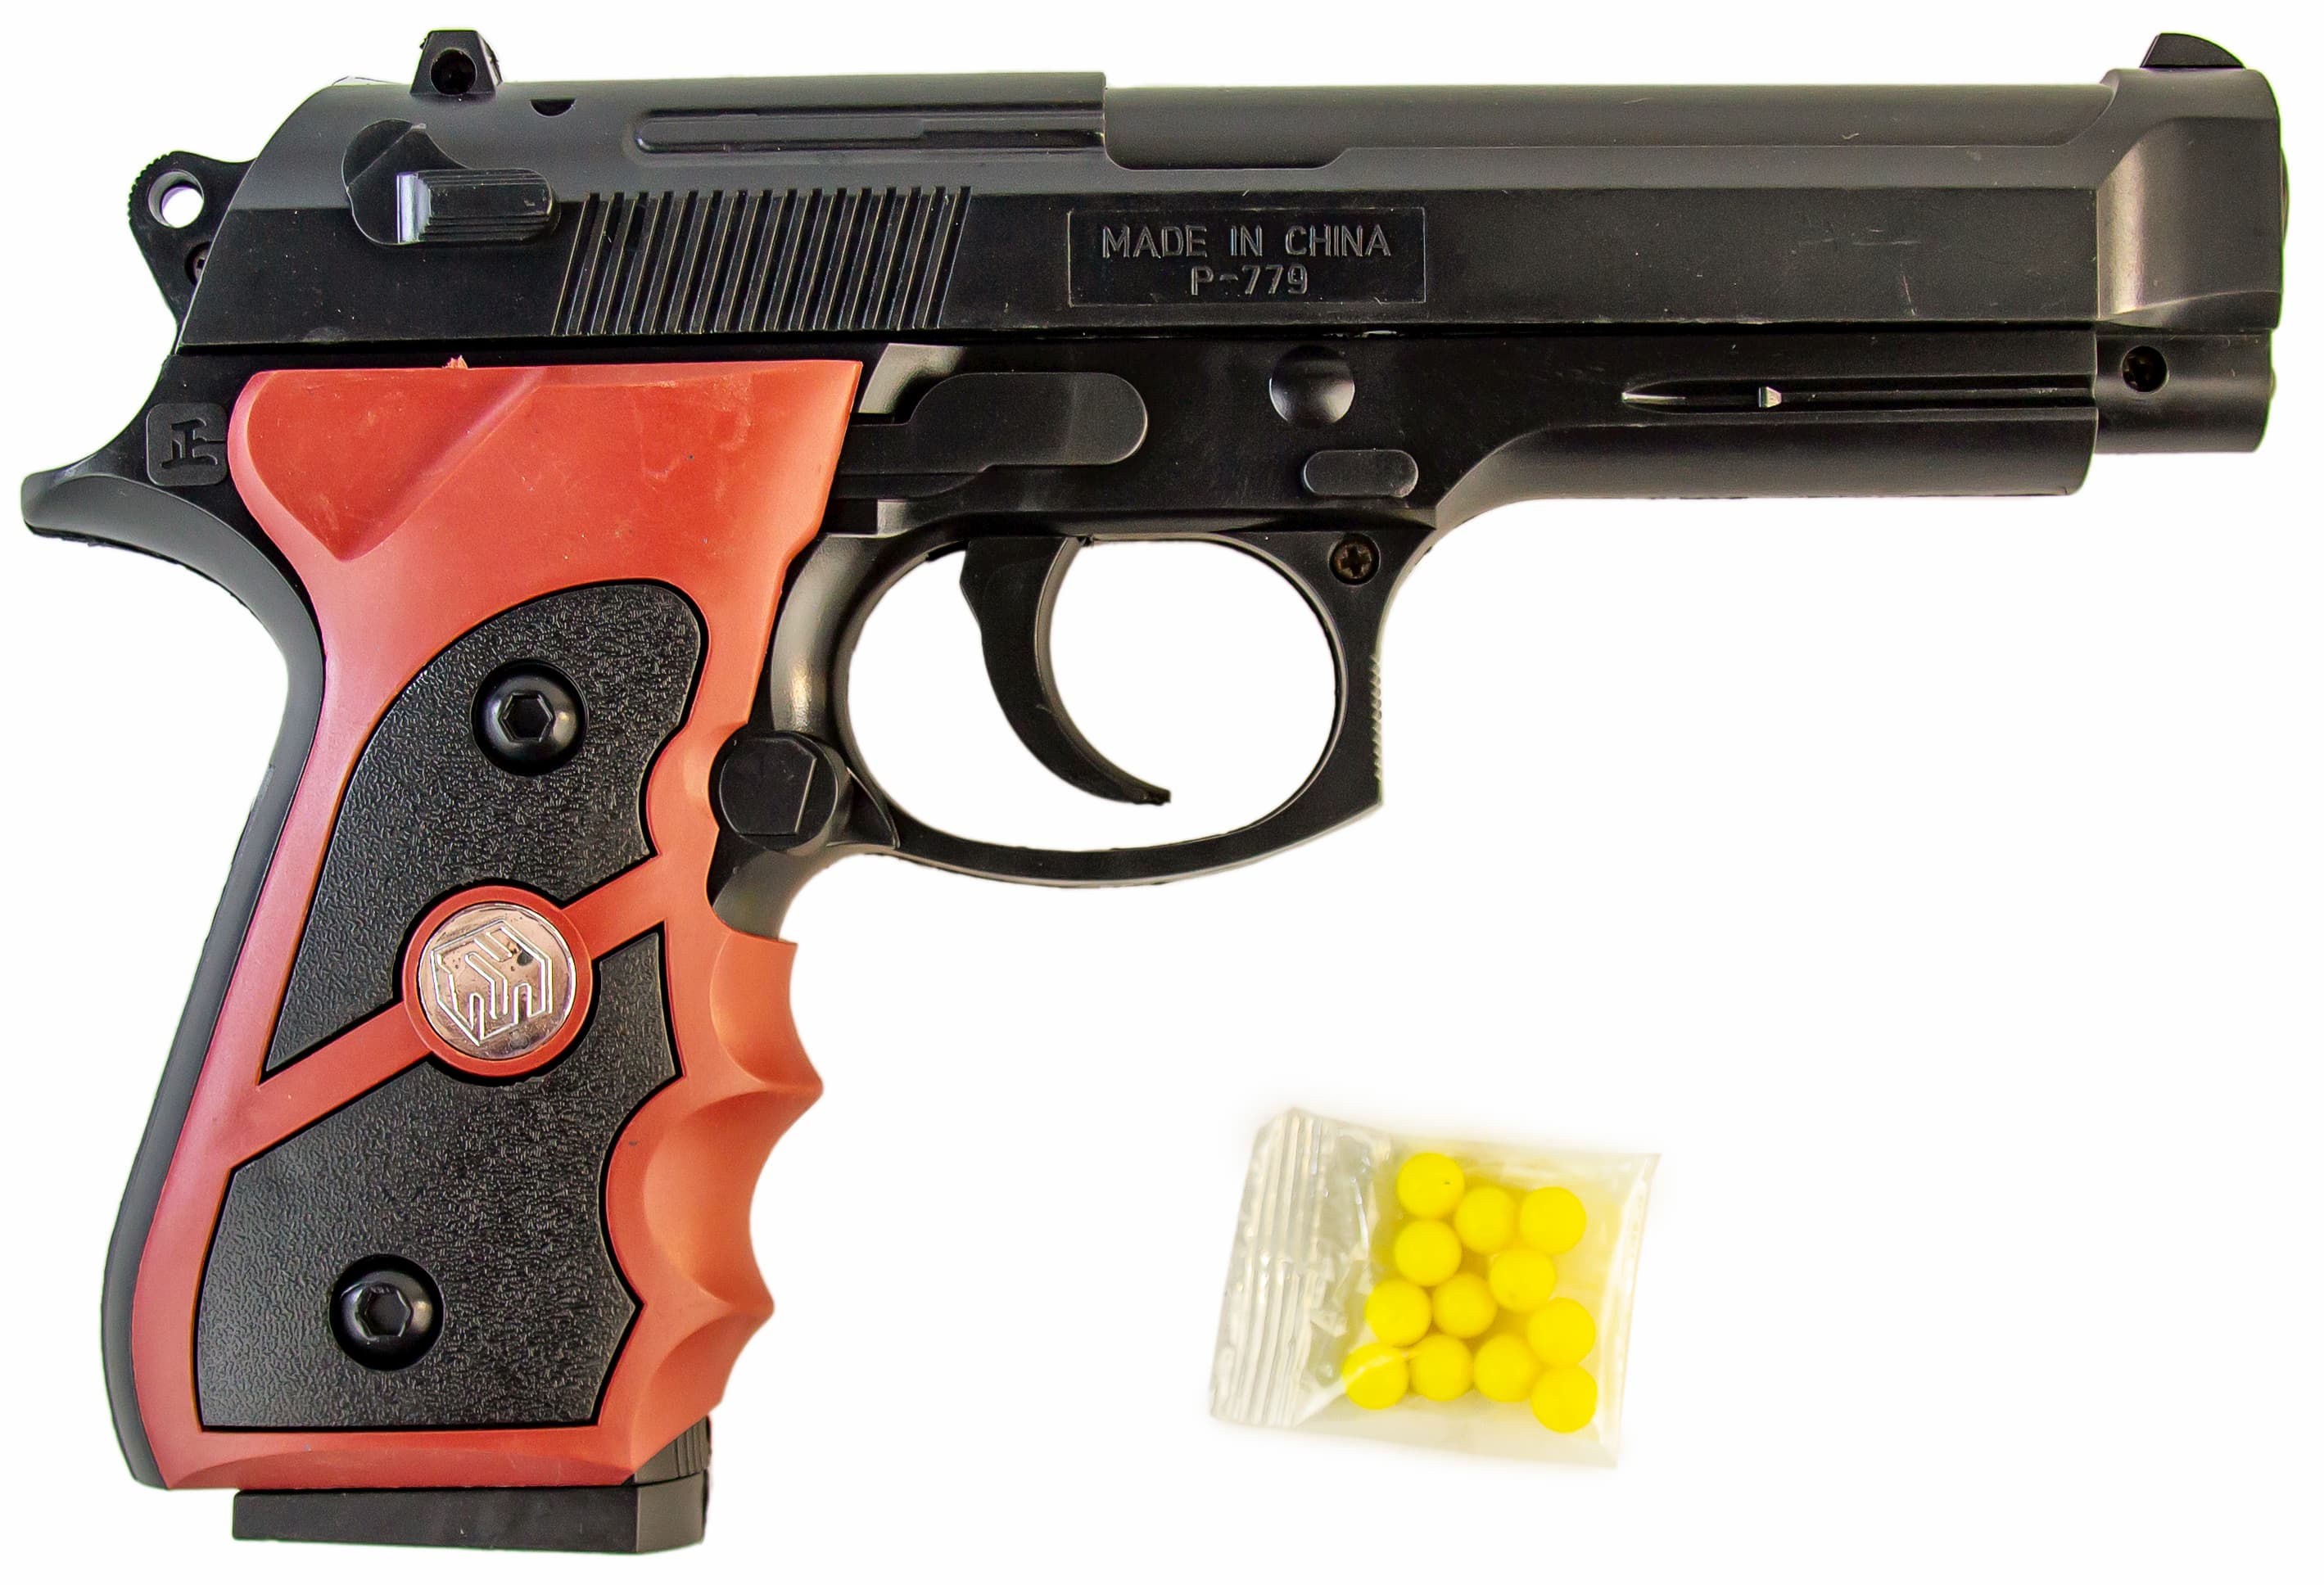 Детский игрушечный пистолет с пульками P-779 / 21*13 см.